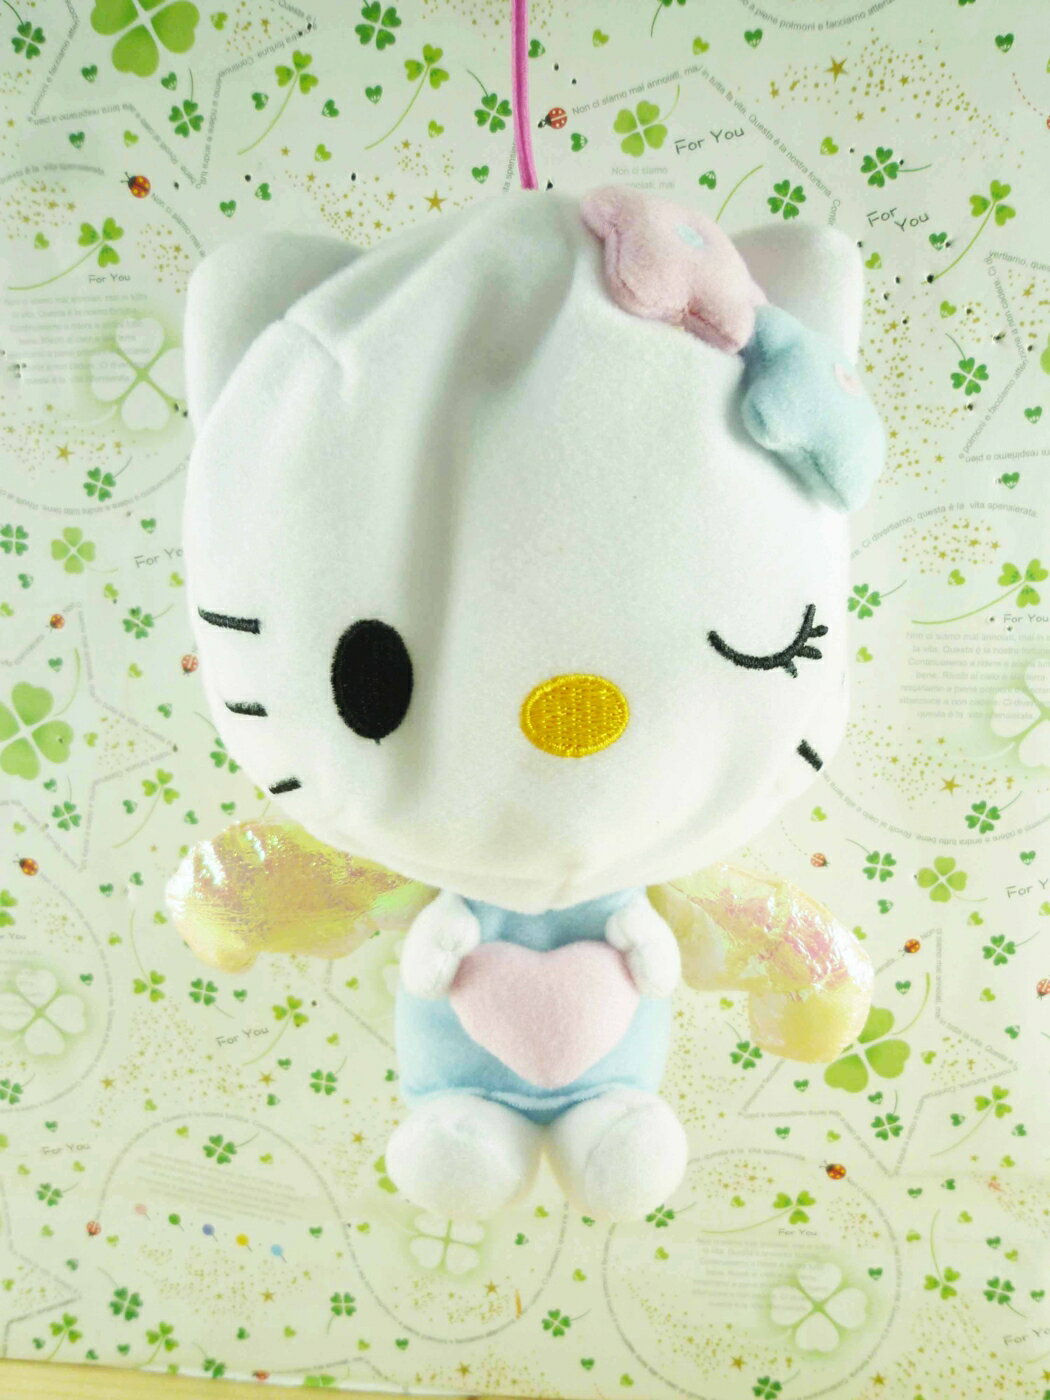 【震撼精品百貨】Hello Kitty 凱蒂貓 造型絨毛充氣球-天使 震撼日式精品百貨